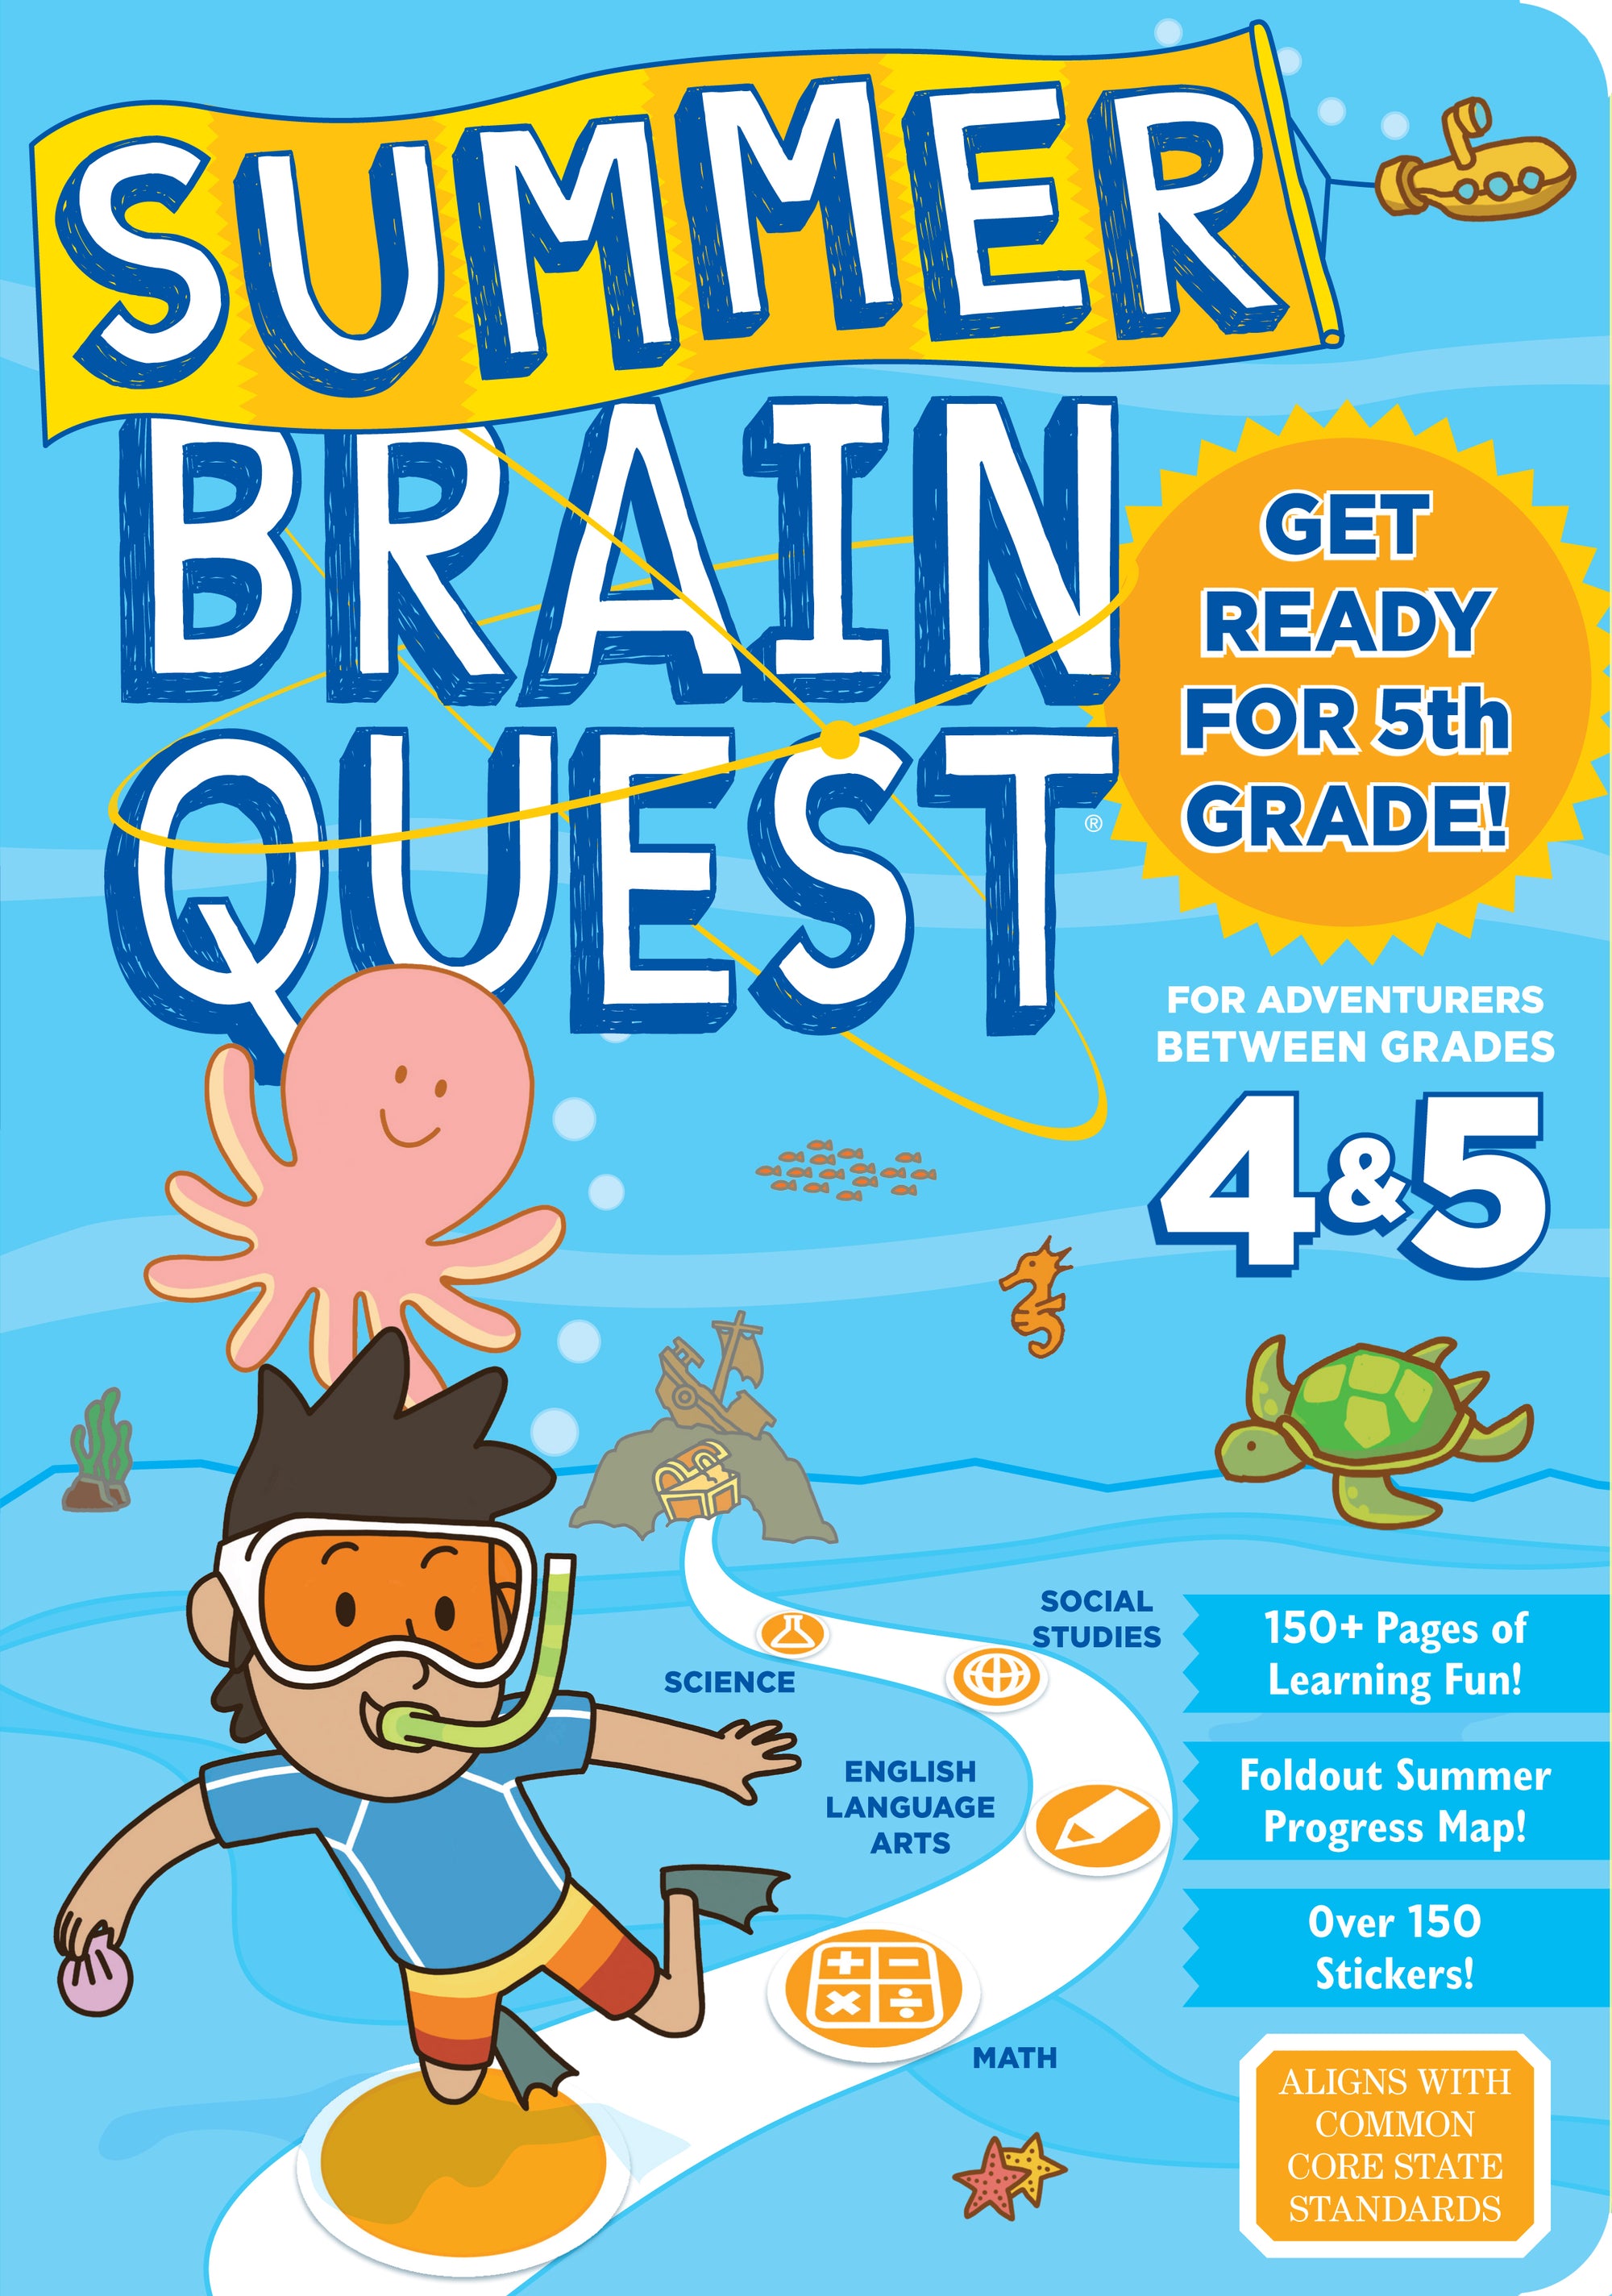 Brain Quest Summer Brain Quest: Between Grades 4 & 5